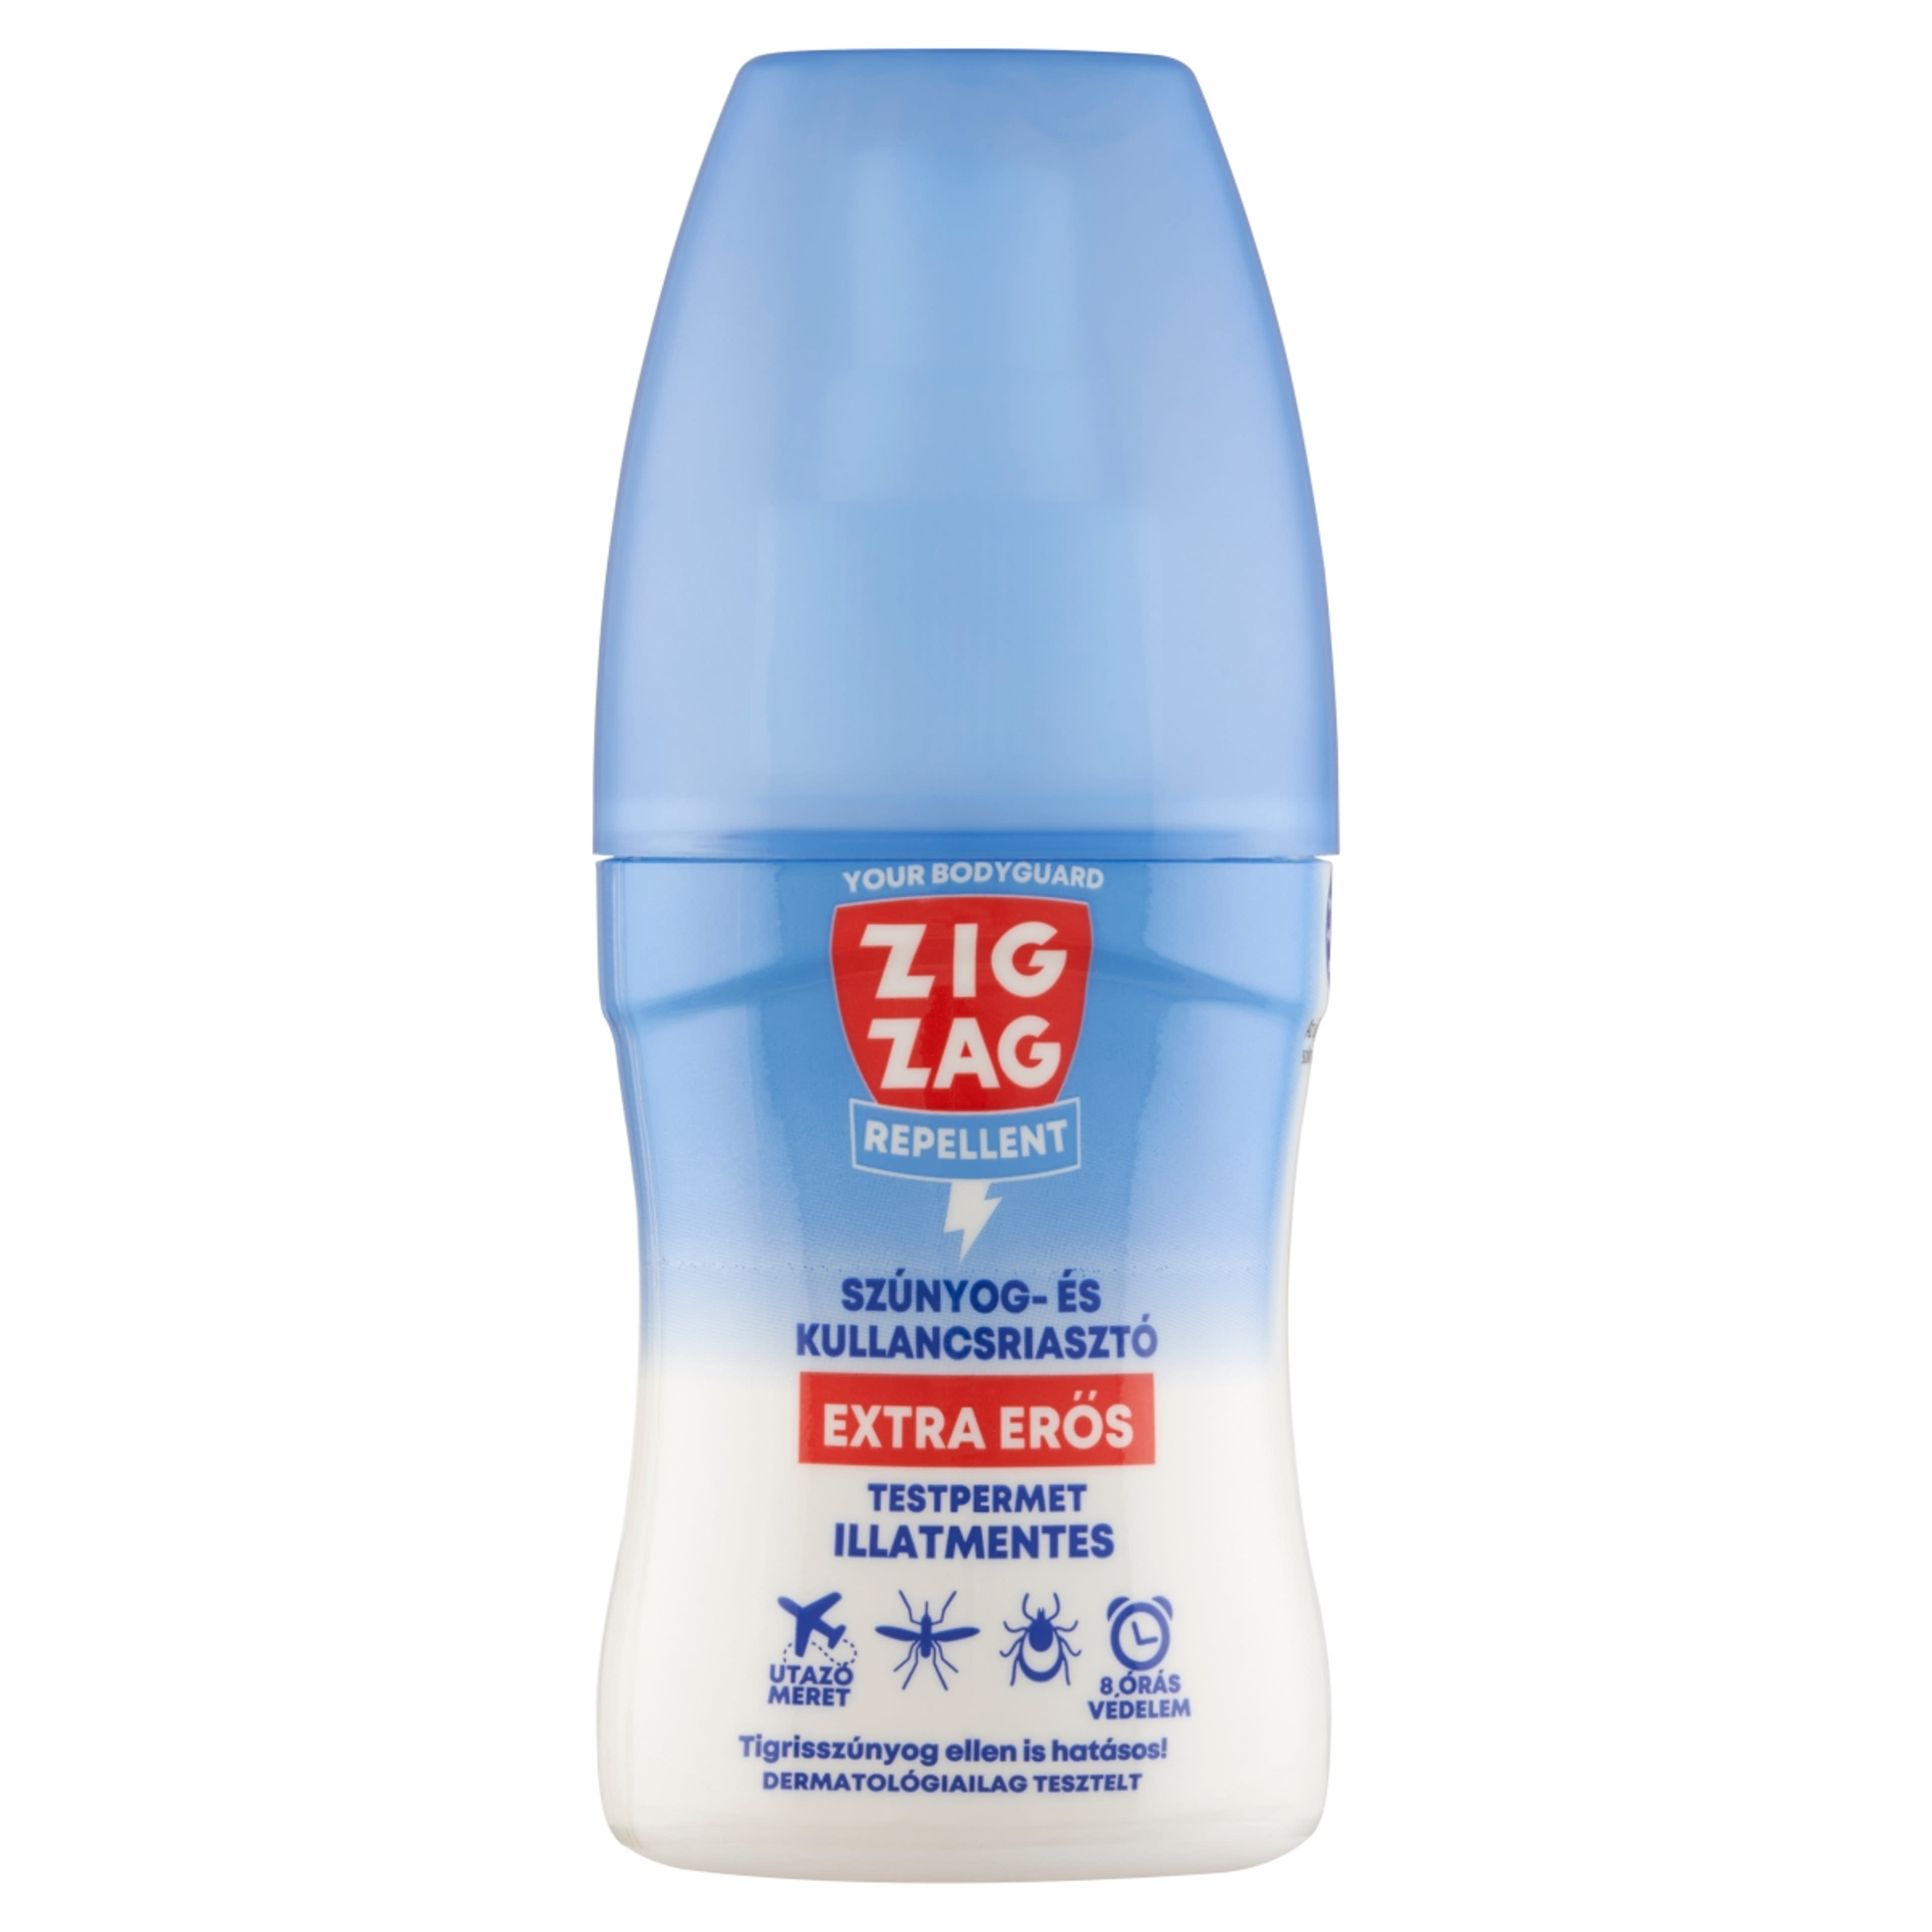 Zig Zag extra erős, szagtalan rovarriasztó permet - 50 ml